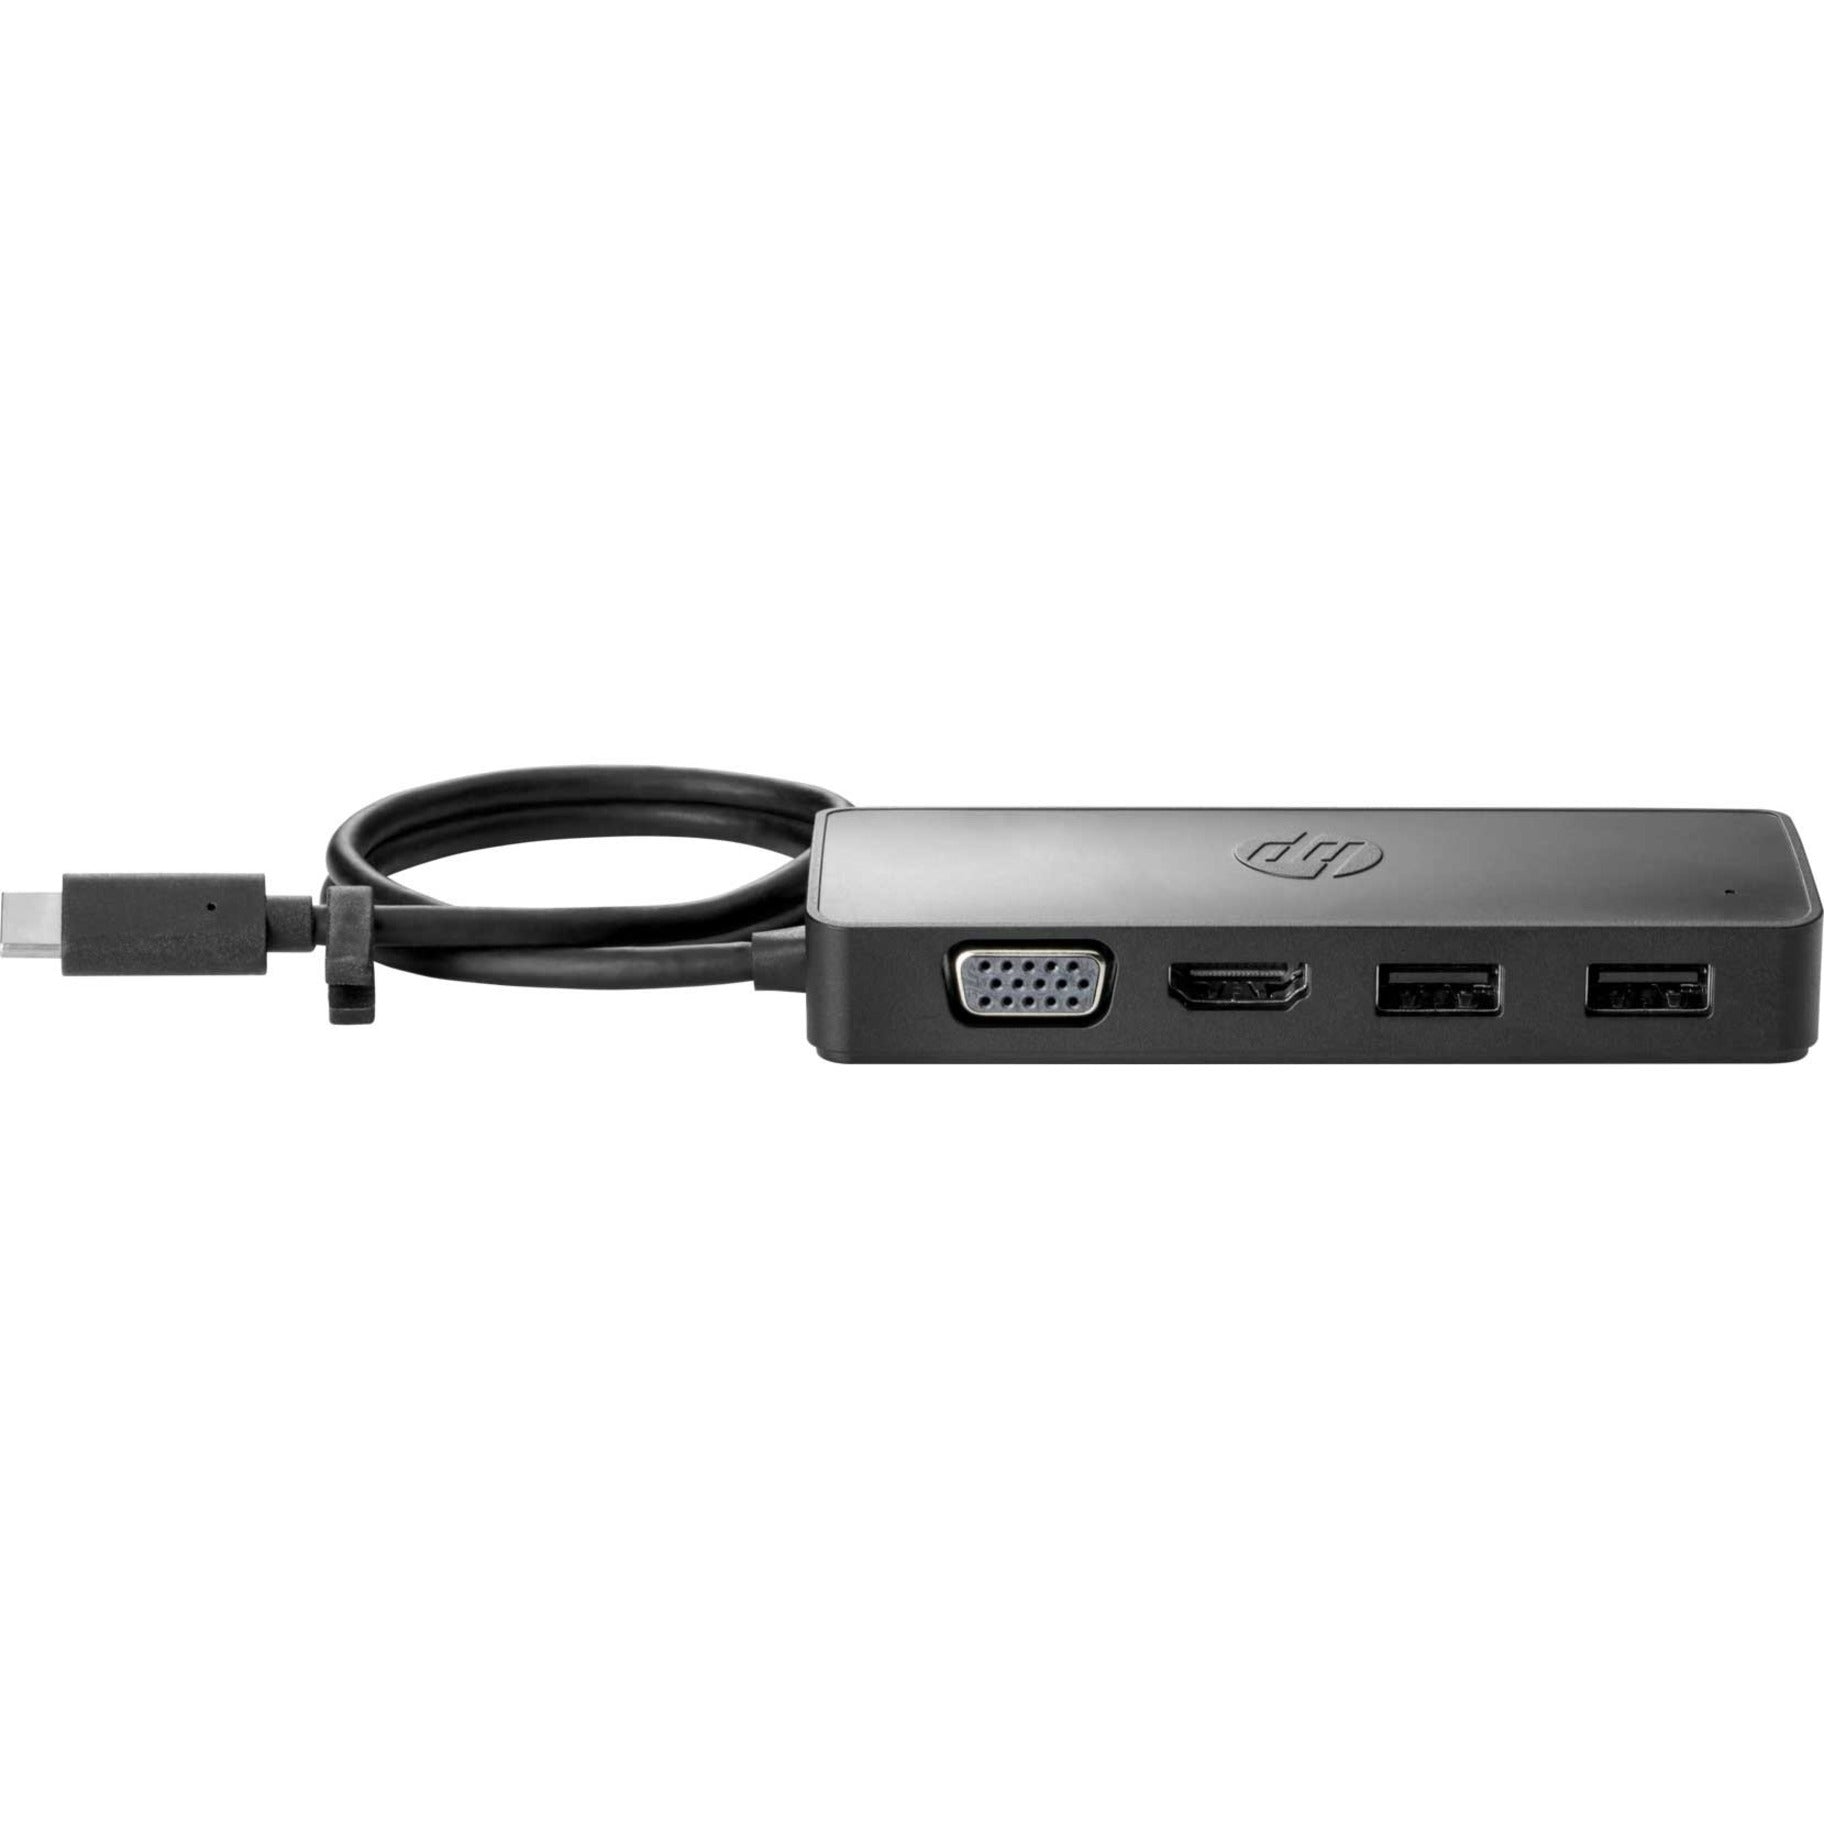 HP 7PJ38UT USB-C Travel Hub G2, VGA, HDMI, USB Type-C, Thunderbolt, Docking Station